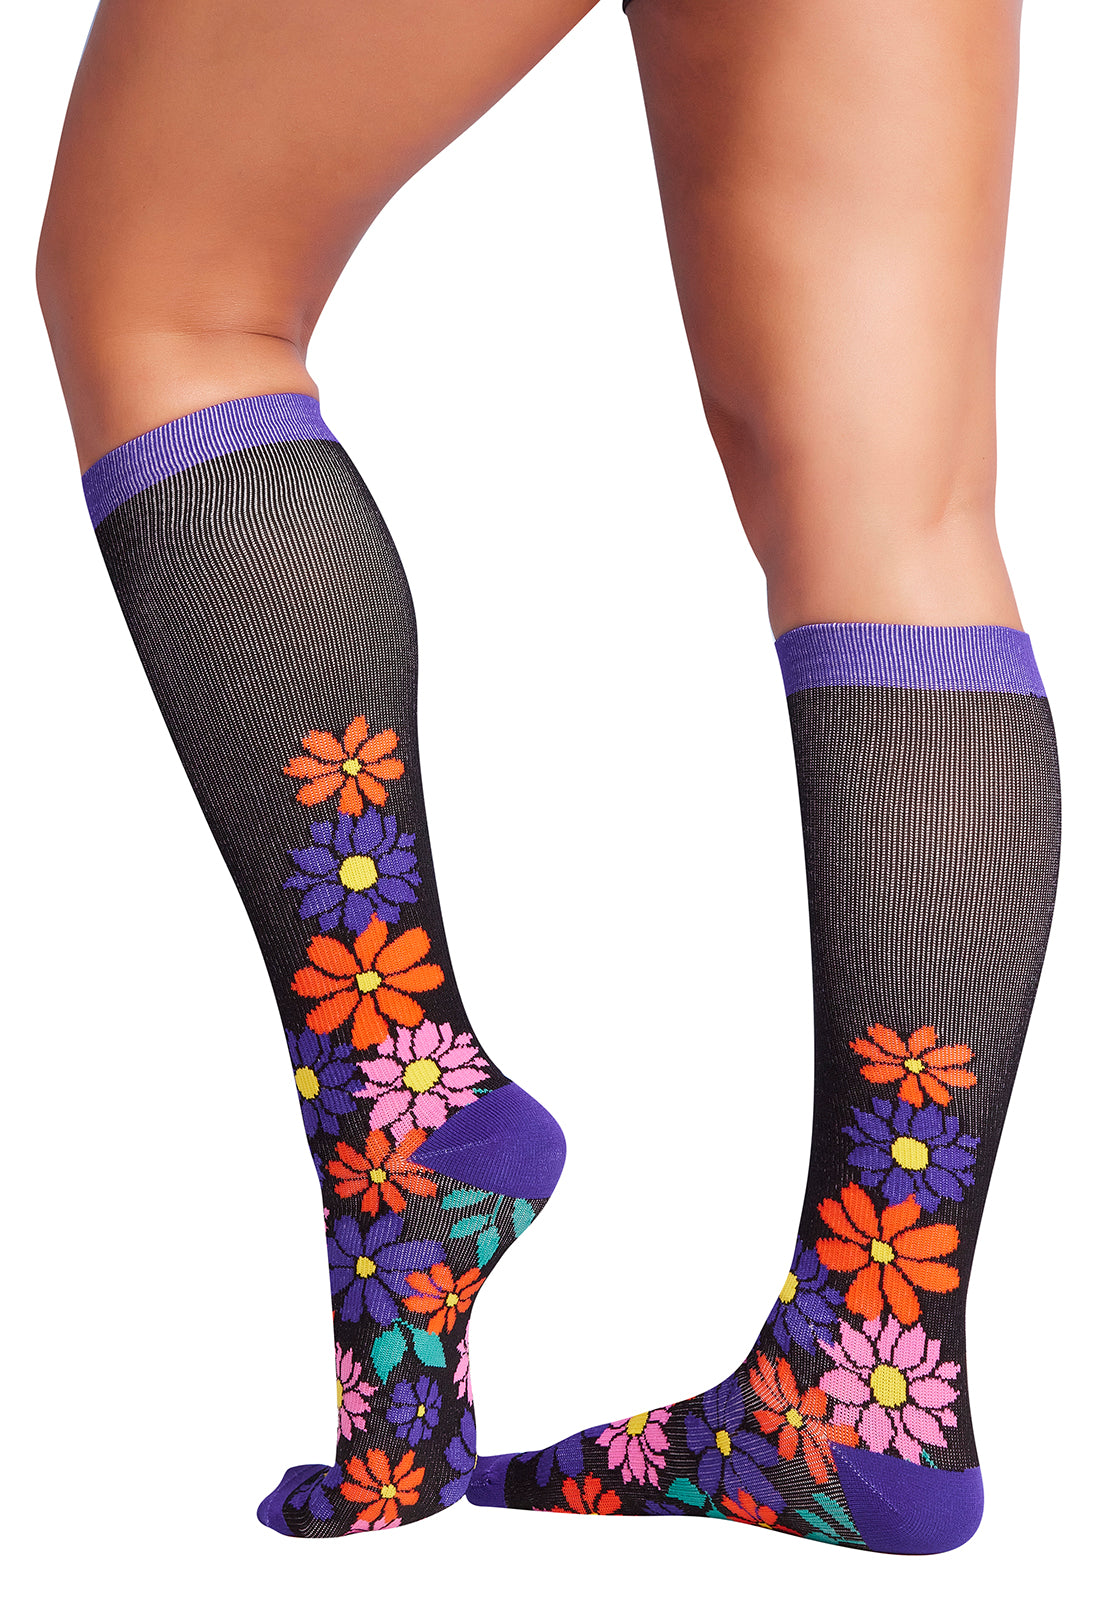 Regular Fit - Compression Socks 10-15mmHg Compression Socks Cherokee Legwear Floral Edge  